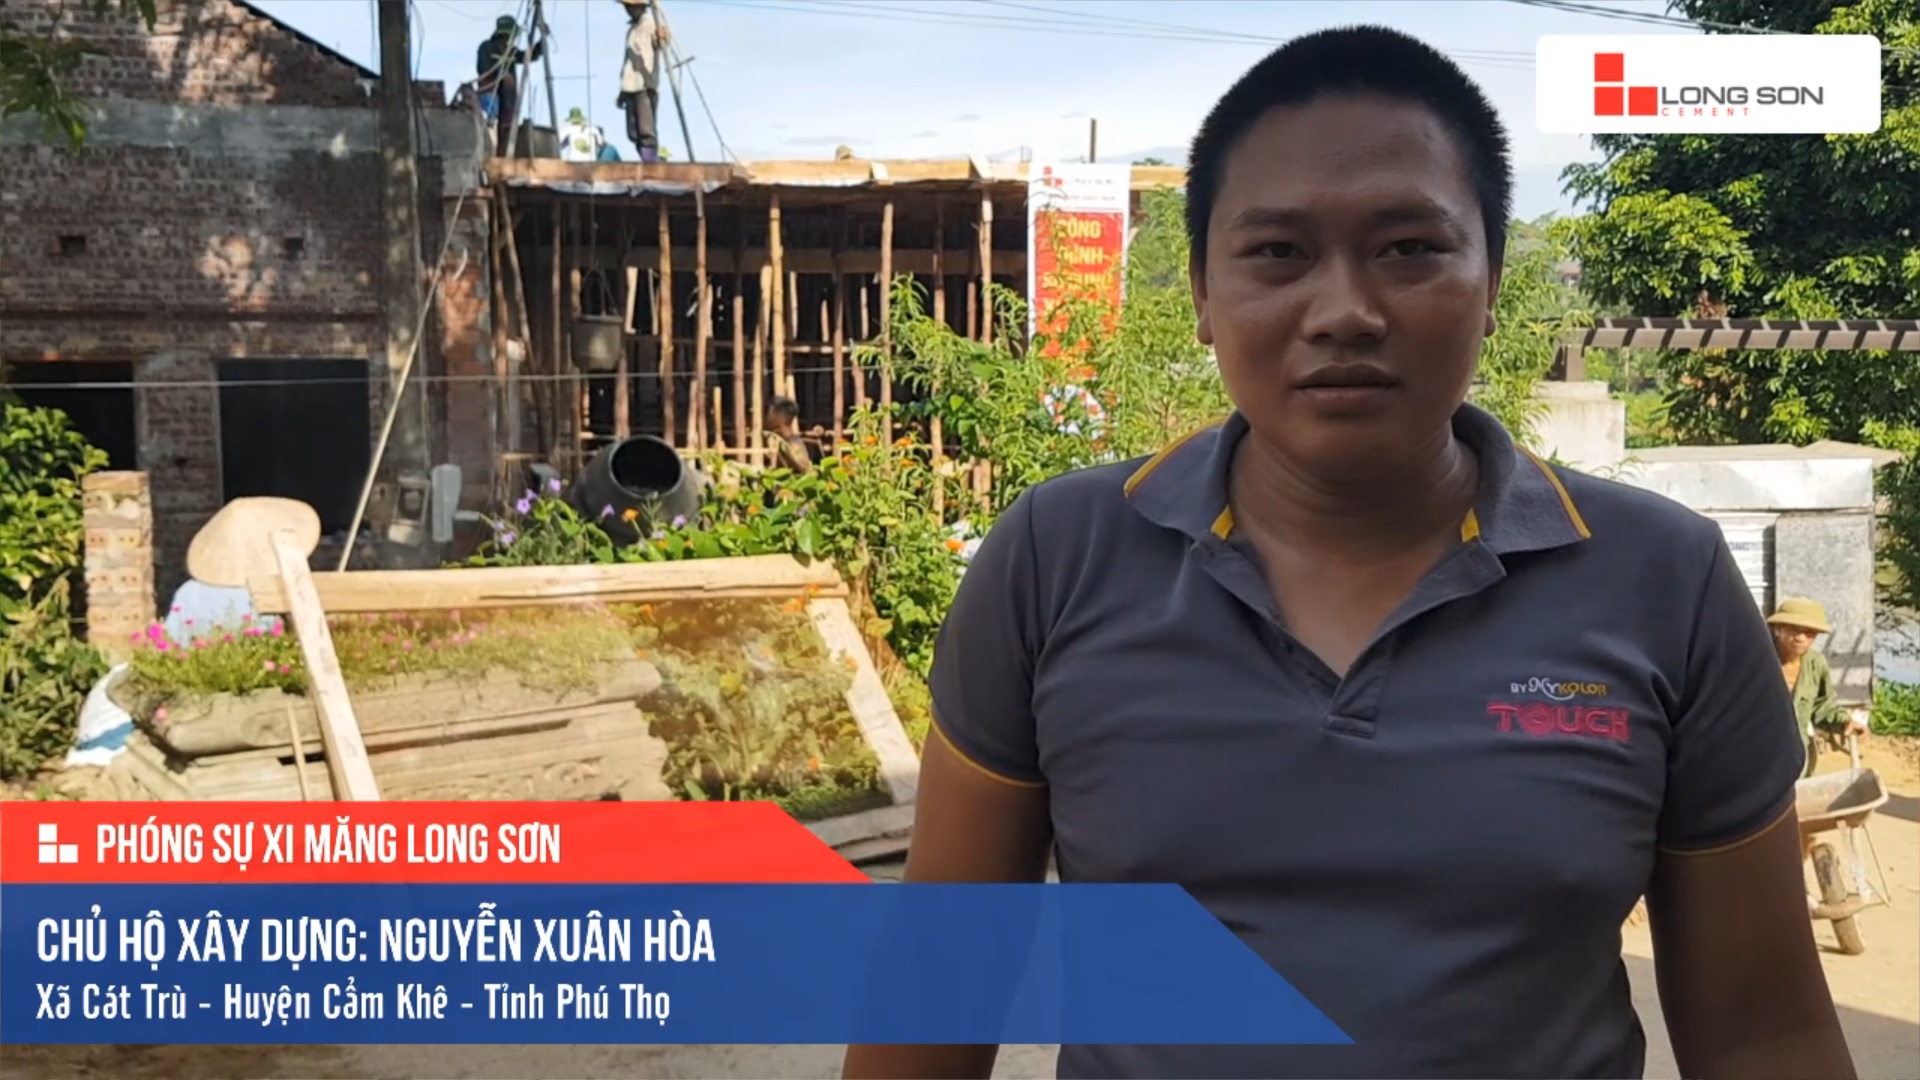 Phóng sự công trình sử dụng Xi măng Long Sơn tại Phú Thọ 07.07.2019